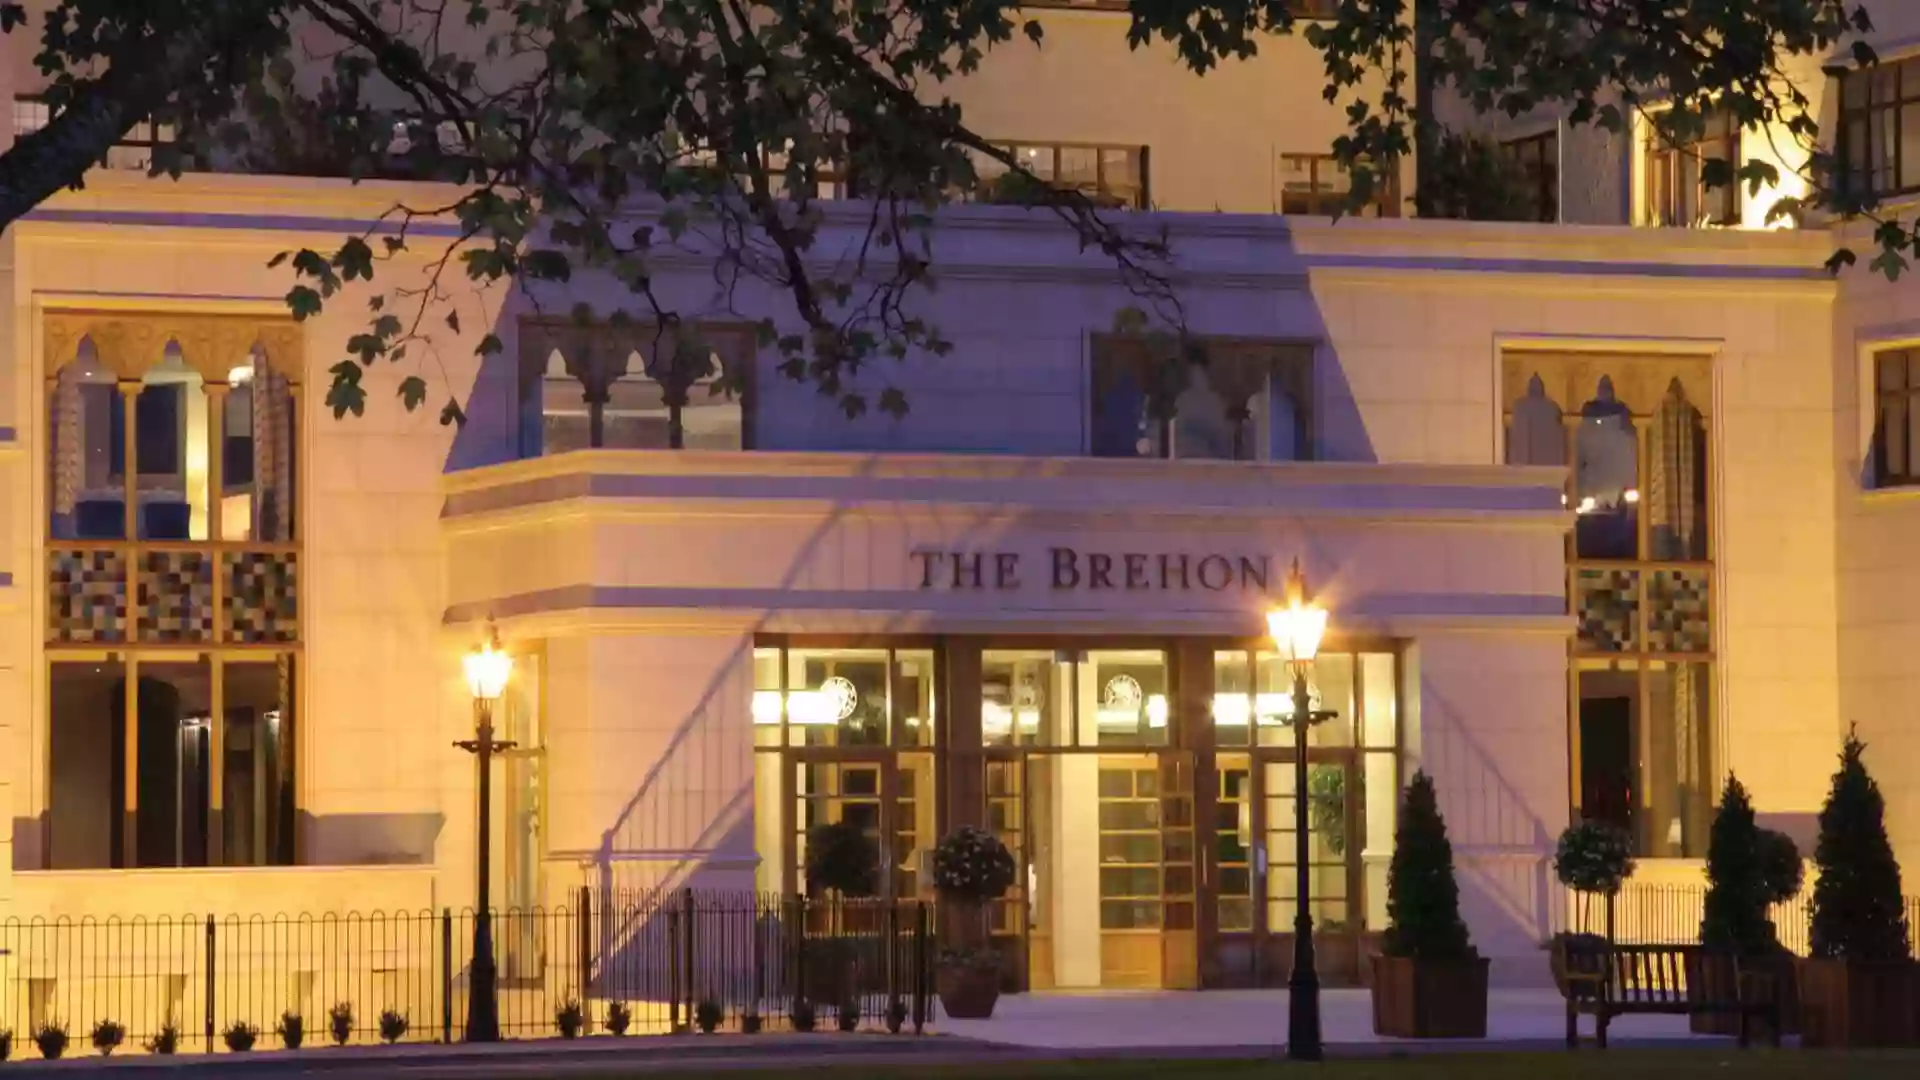 The Brehon Hotel & Spa